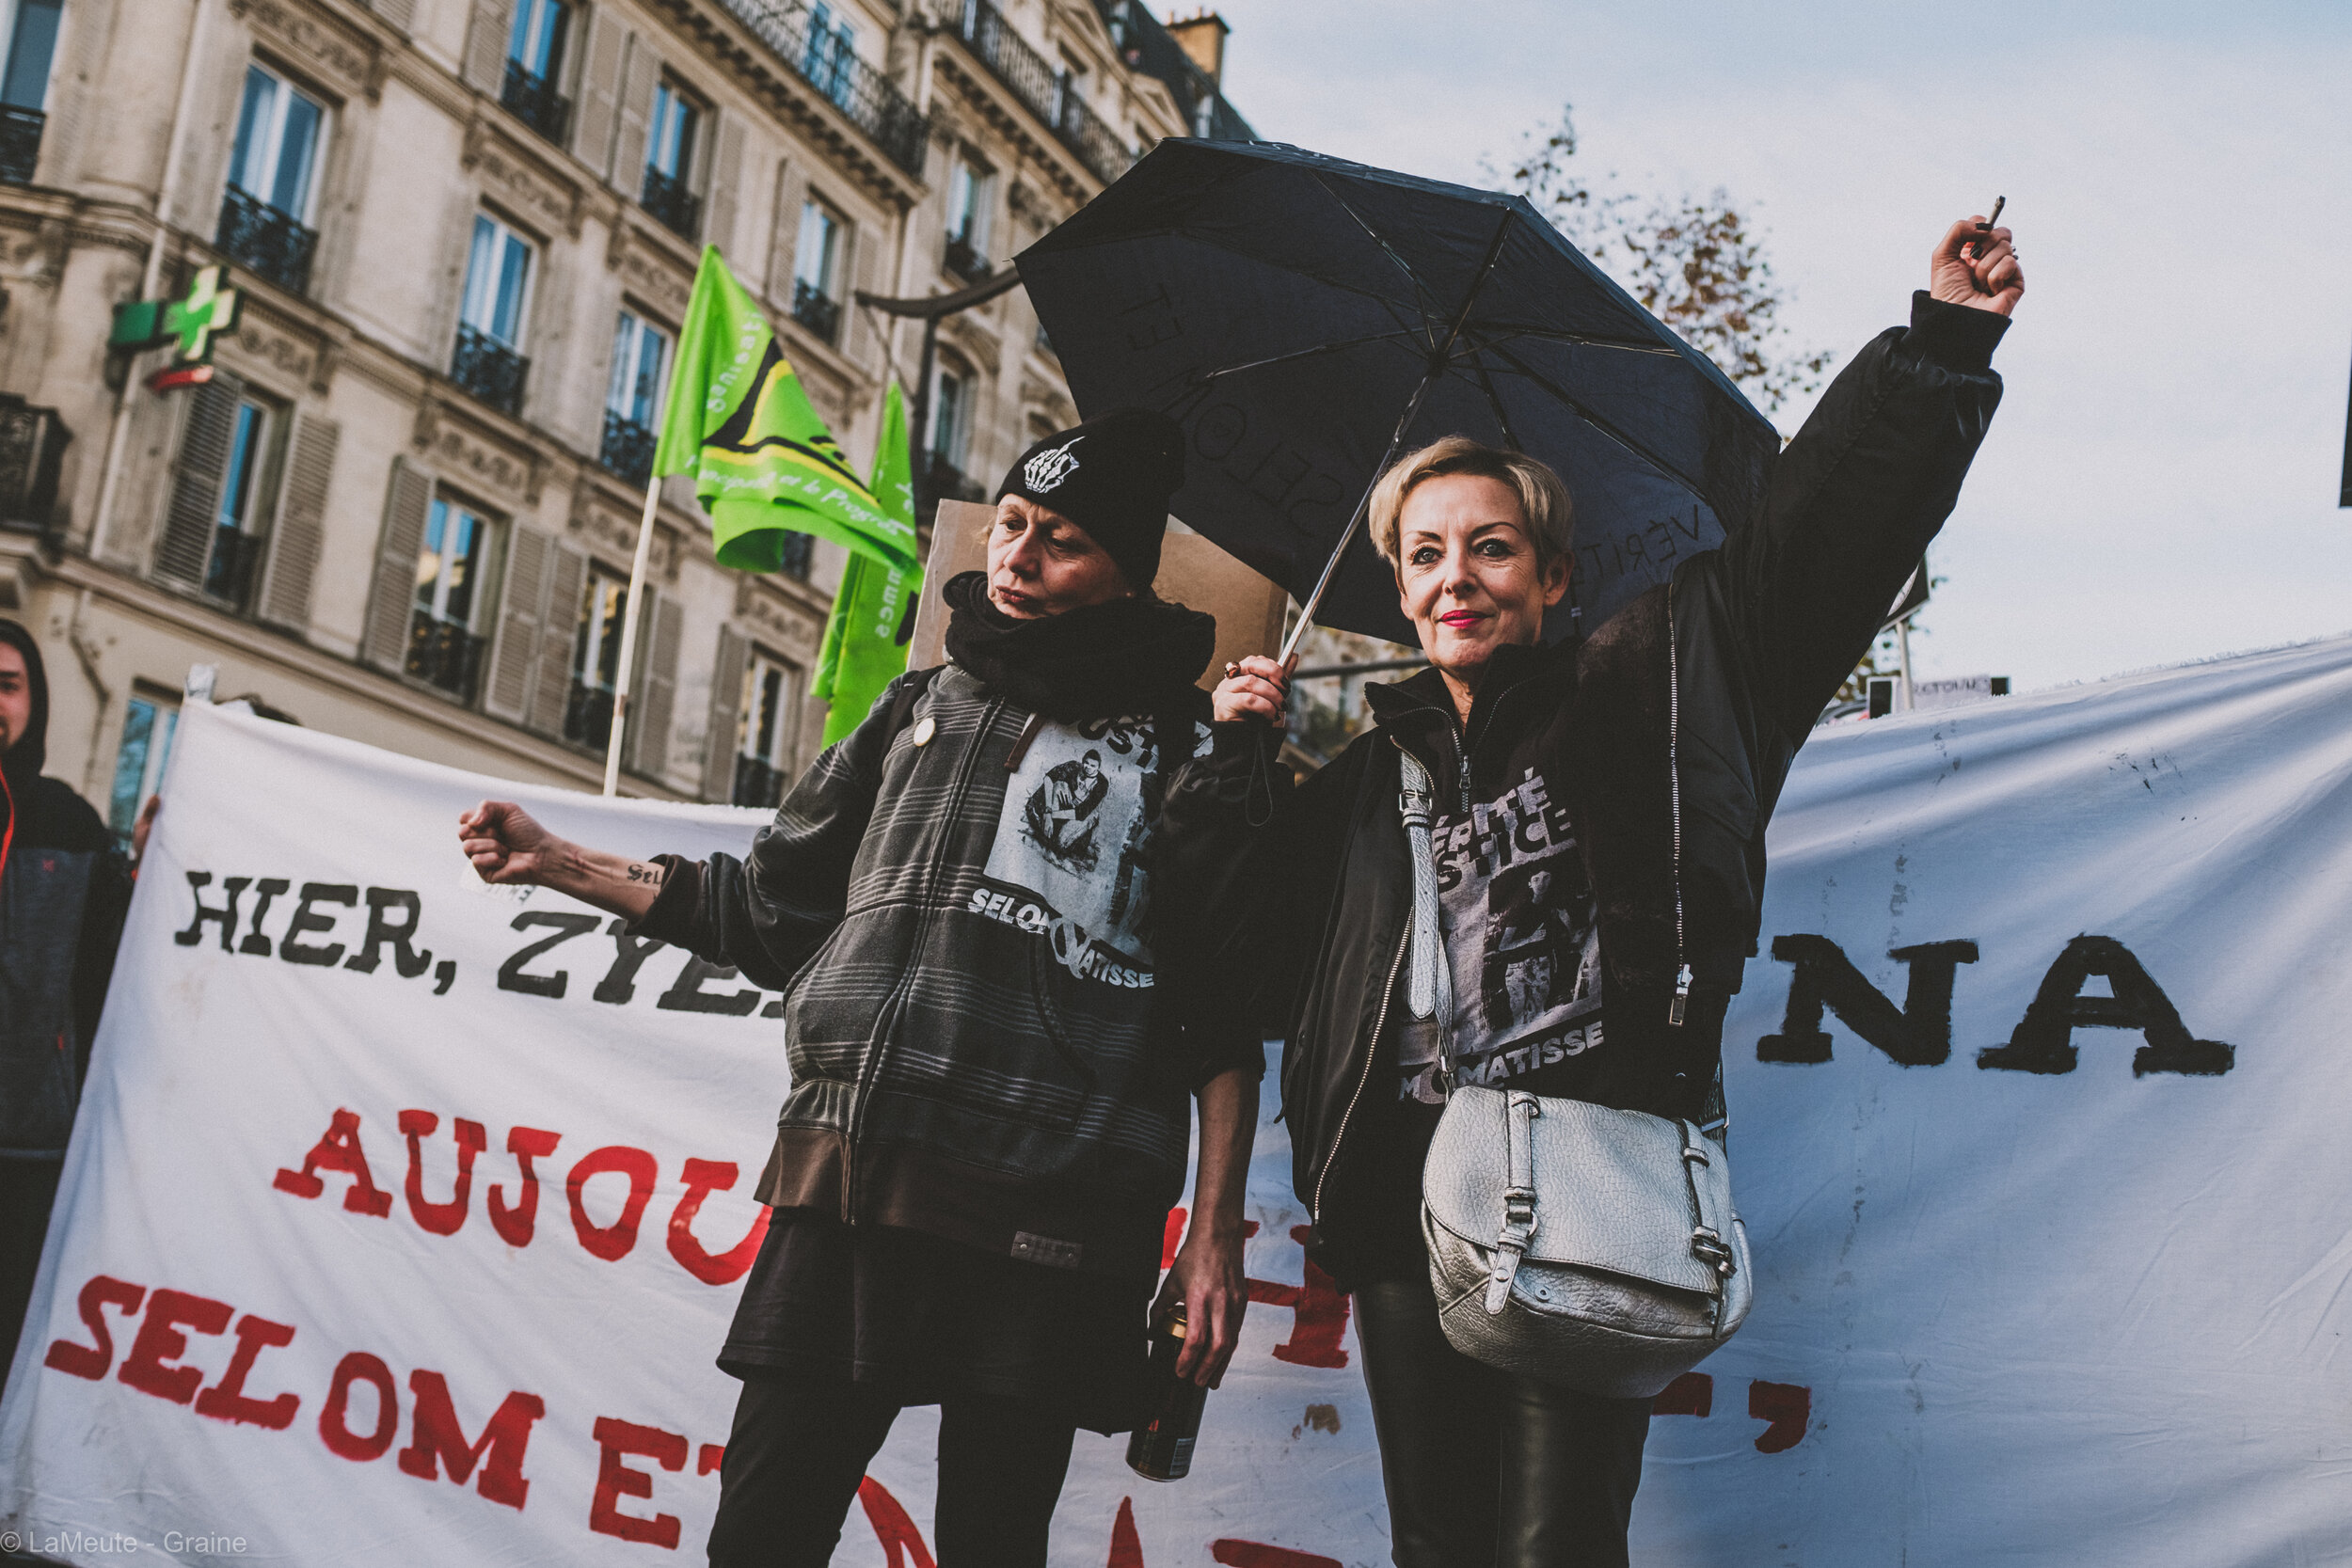  Les  “Lionnes de Lille” , véritables battantes, ne cachant pas leurs convictions anti-autoritaires et antifascistes, défilent avec une banderole  “Hier, Zyed et Bouna - Aujourd’hui, Selom et Matisse” . Derrière elles, la foule scande  “Zyed - Bouna,